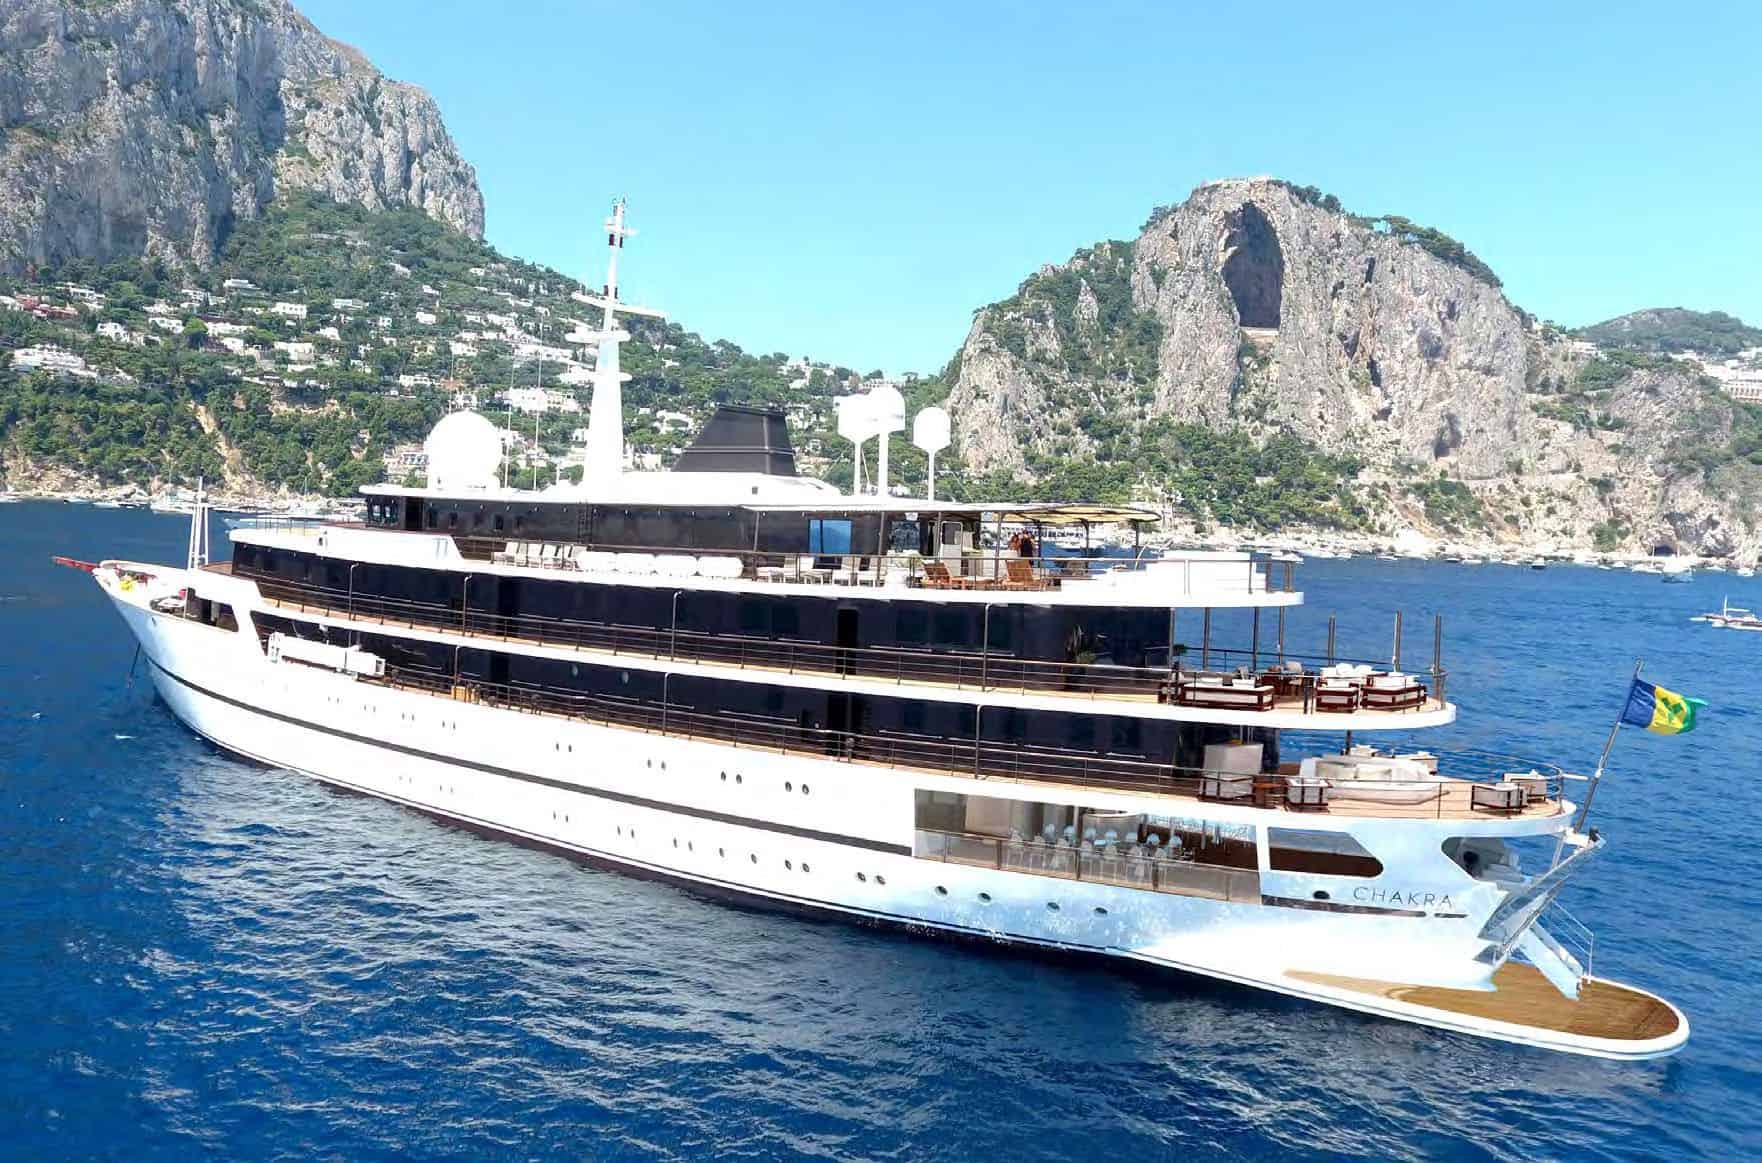 ⚡ Yacht Charter Mediterranean | Luxury Yacht Charter Mediterranean